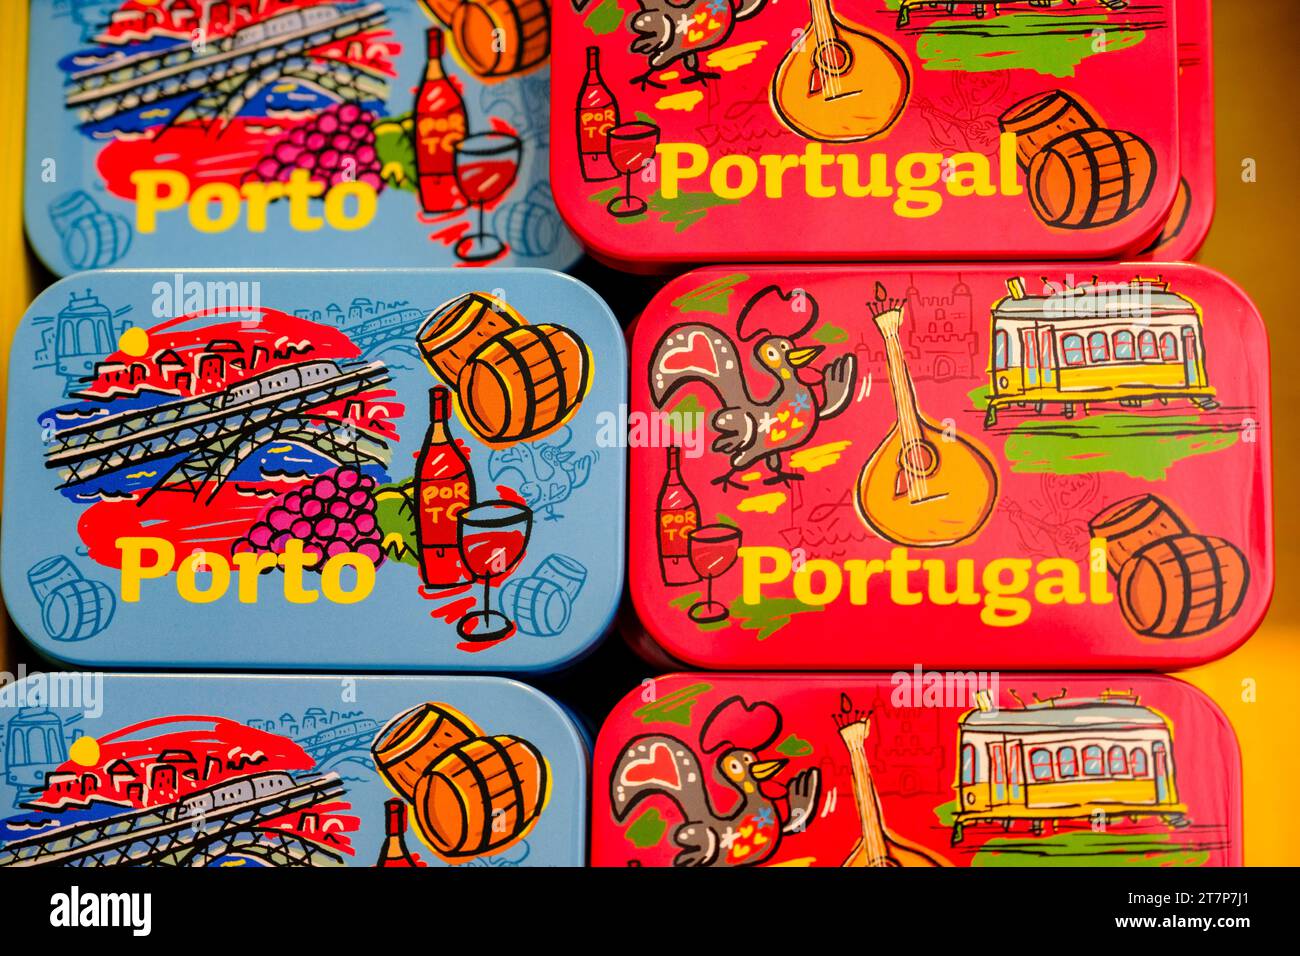 Canettes de sardines portugaises vintage fantaisie, souvenirs, marché Bolhao, Porto, Portugal Banque D'Images